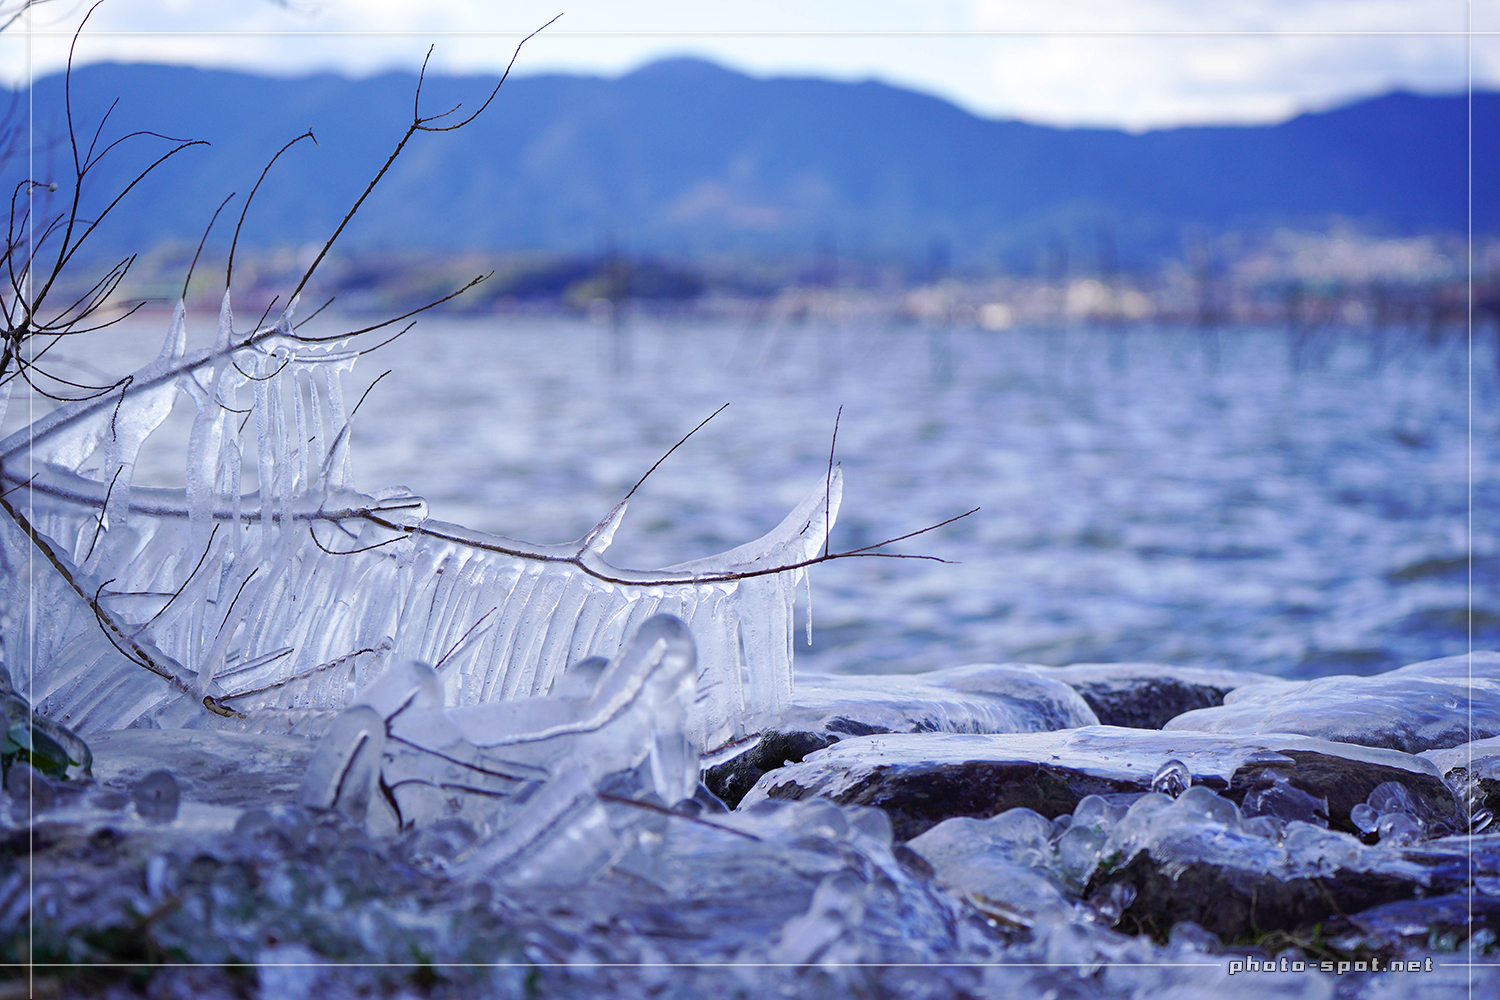 琵琶湖に氷のアート「しぶき氷」枝から垂れ下がった氷柱